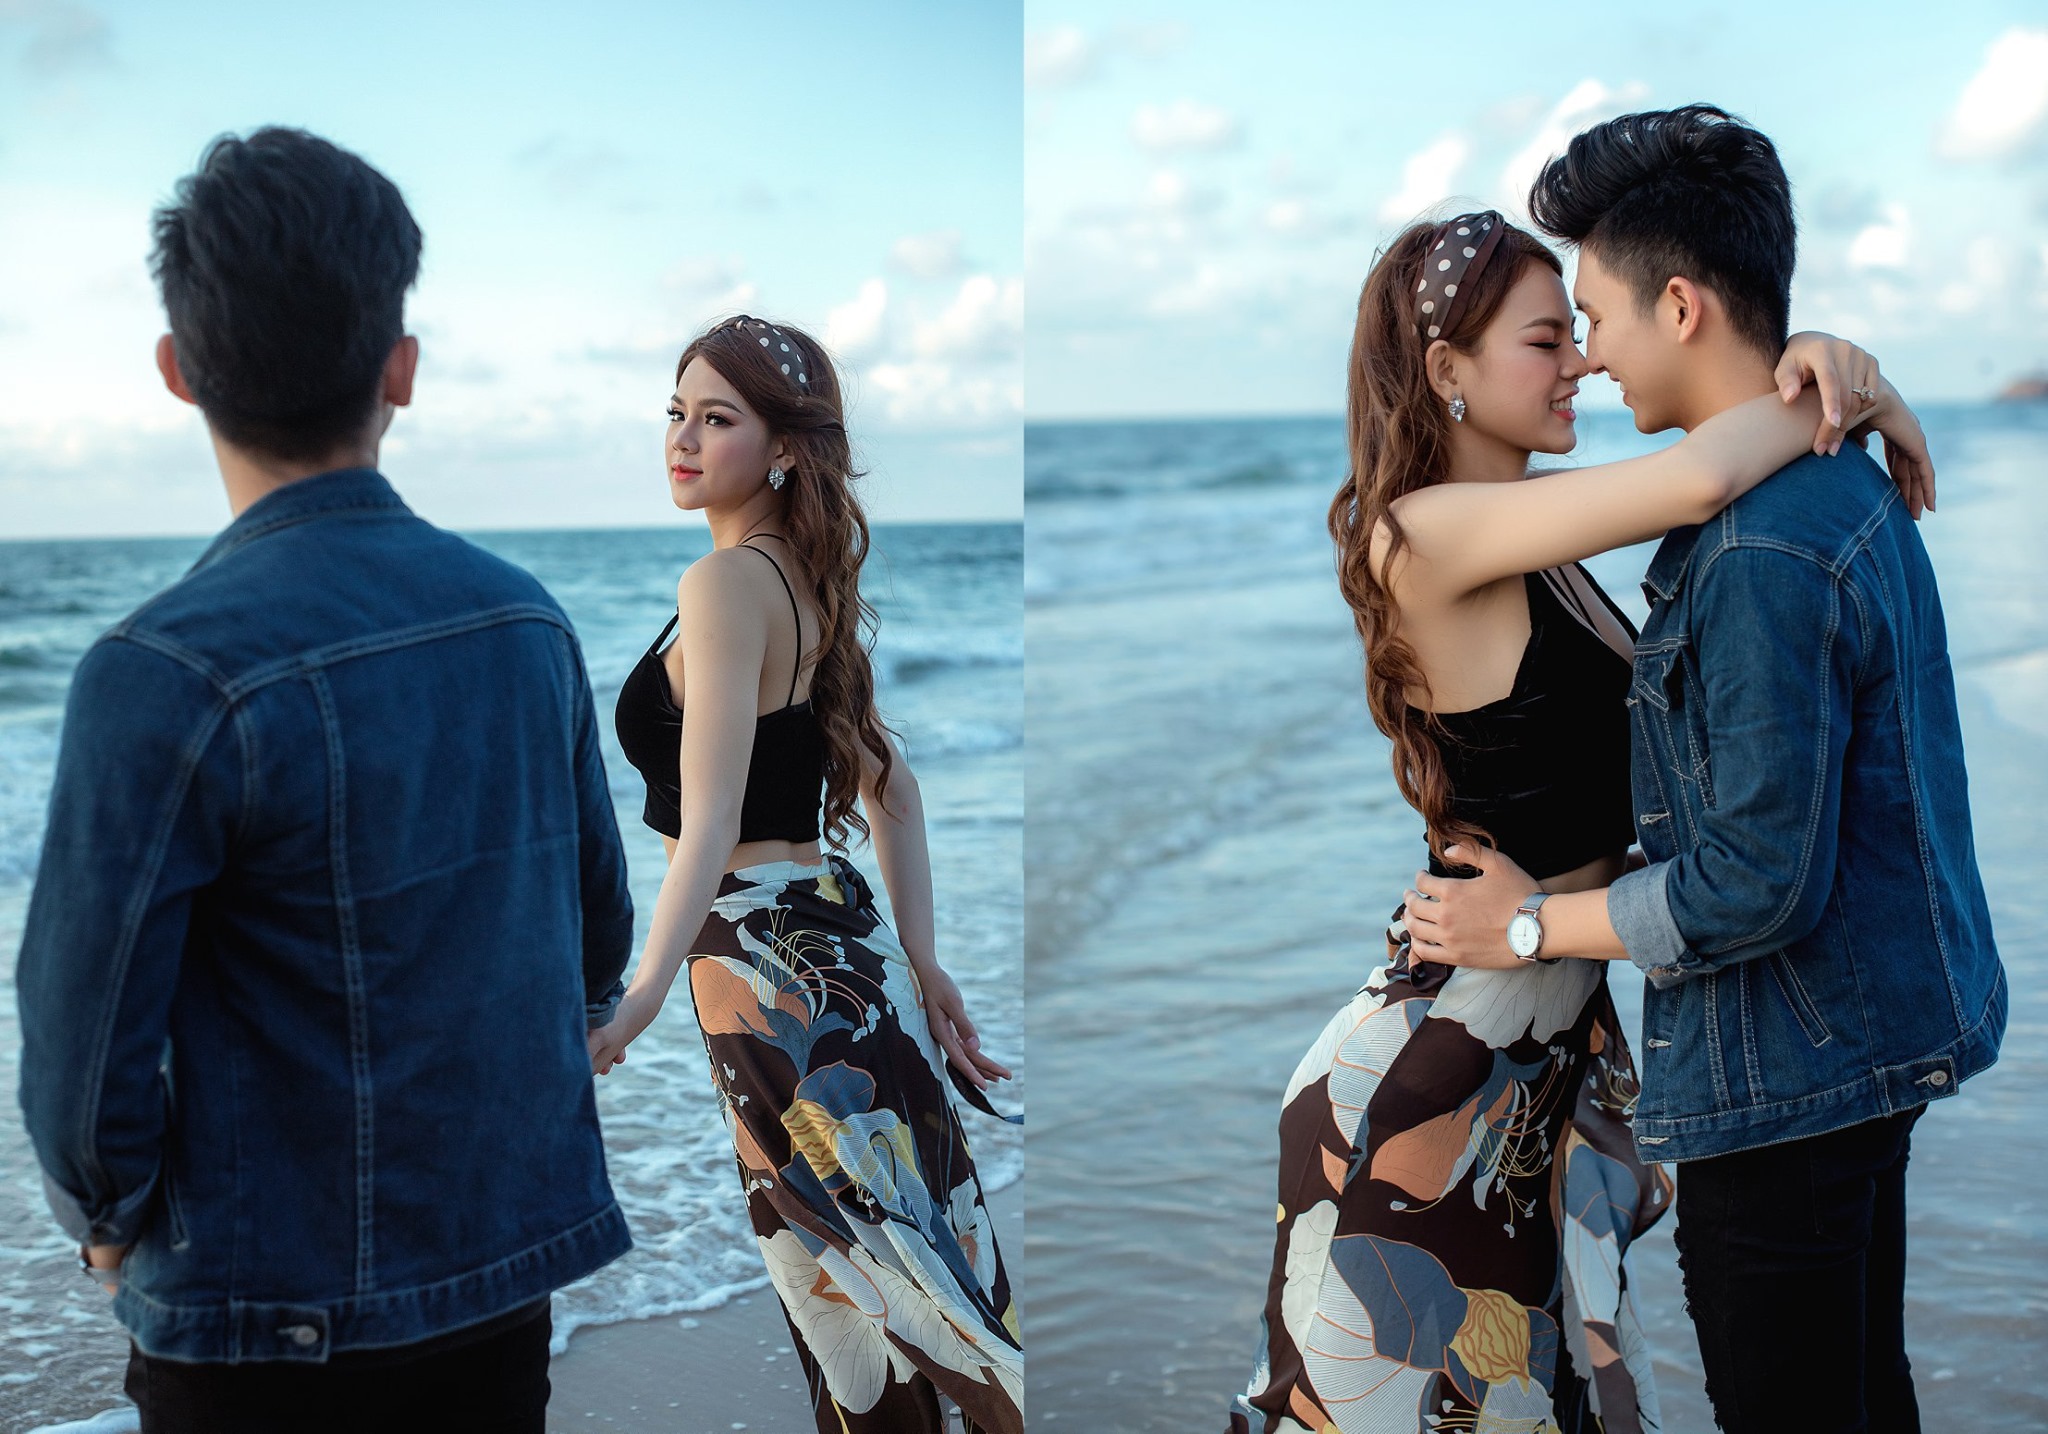 Xếp hạng 8 Studio chụp ảnh cưới đẹp nhất Tiền Giang - Đinh Sang studio